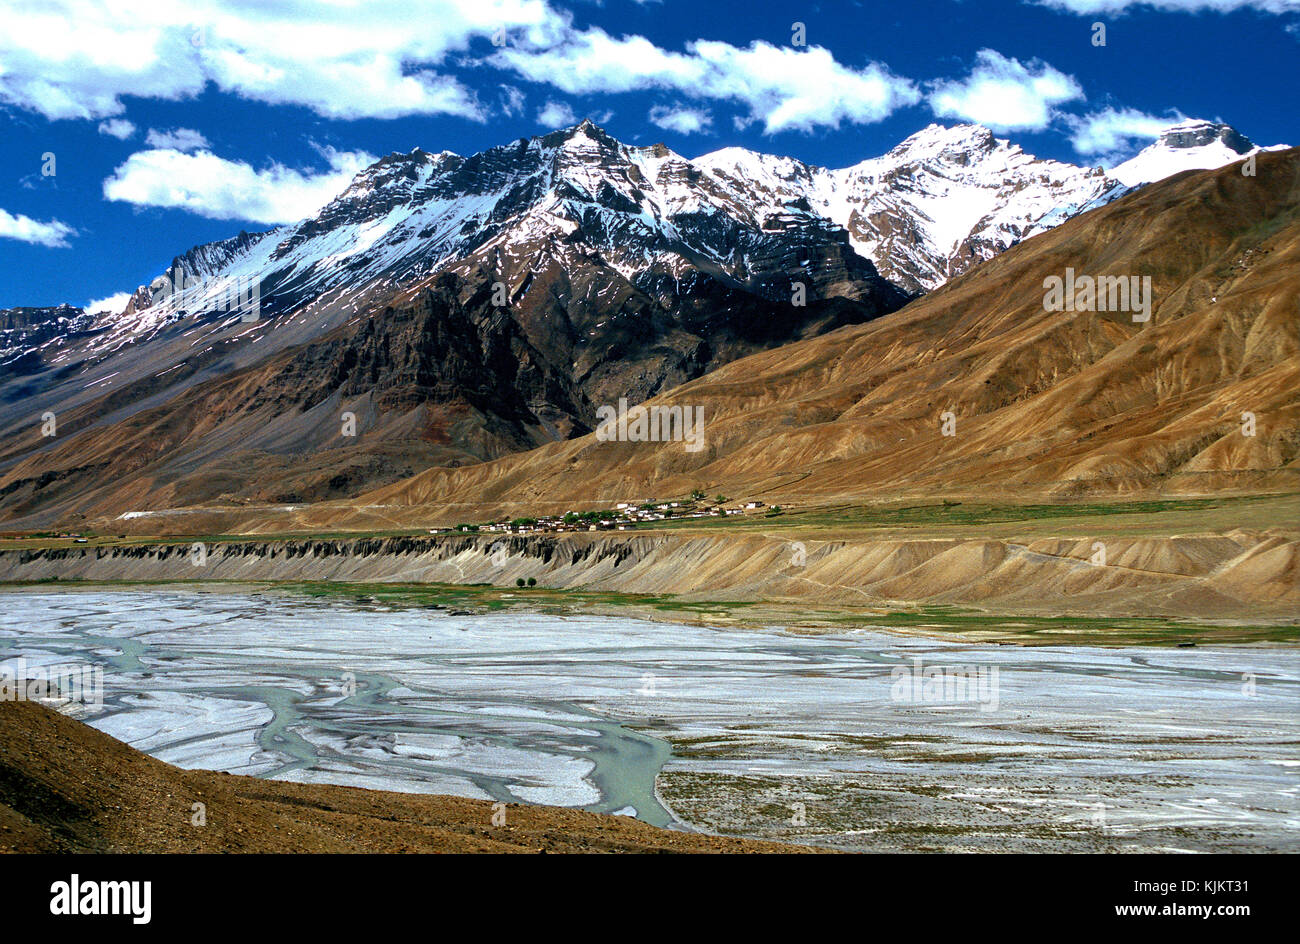 Spiti river landscape. India. Stock Photo